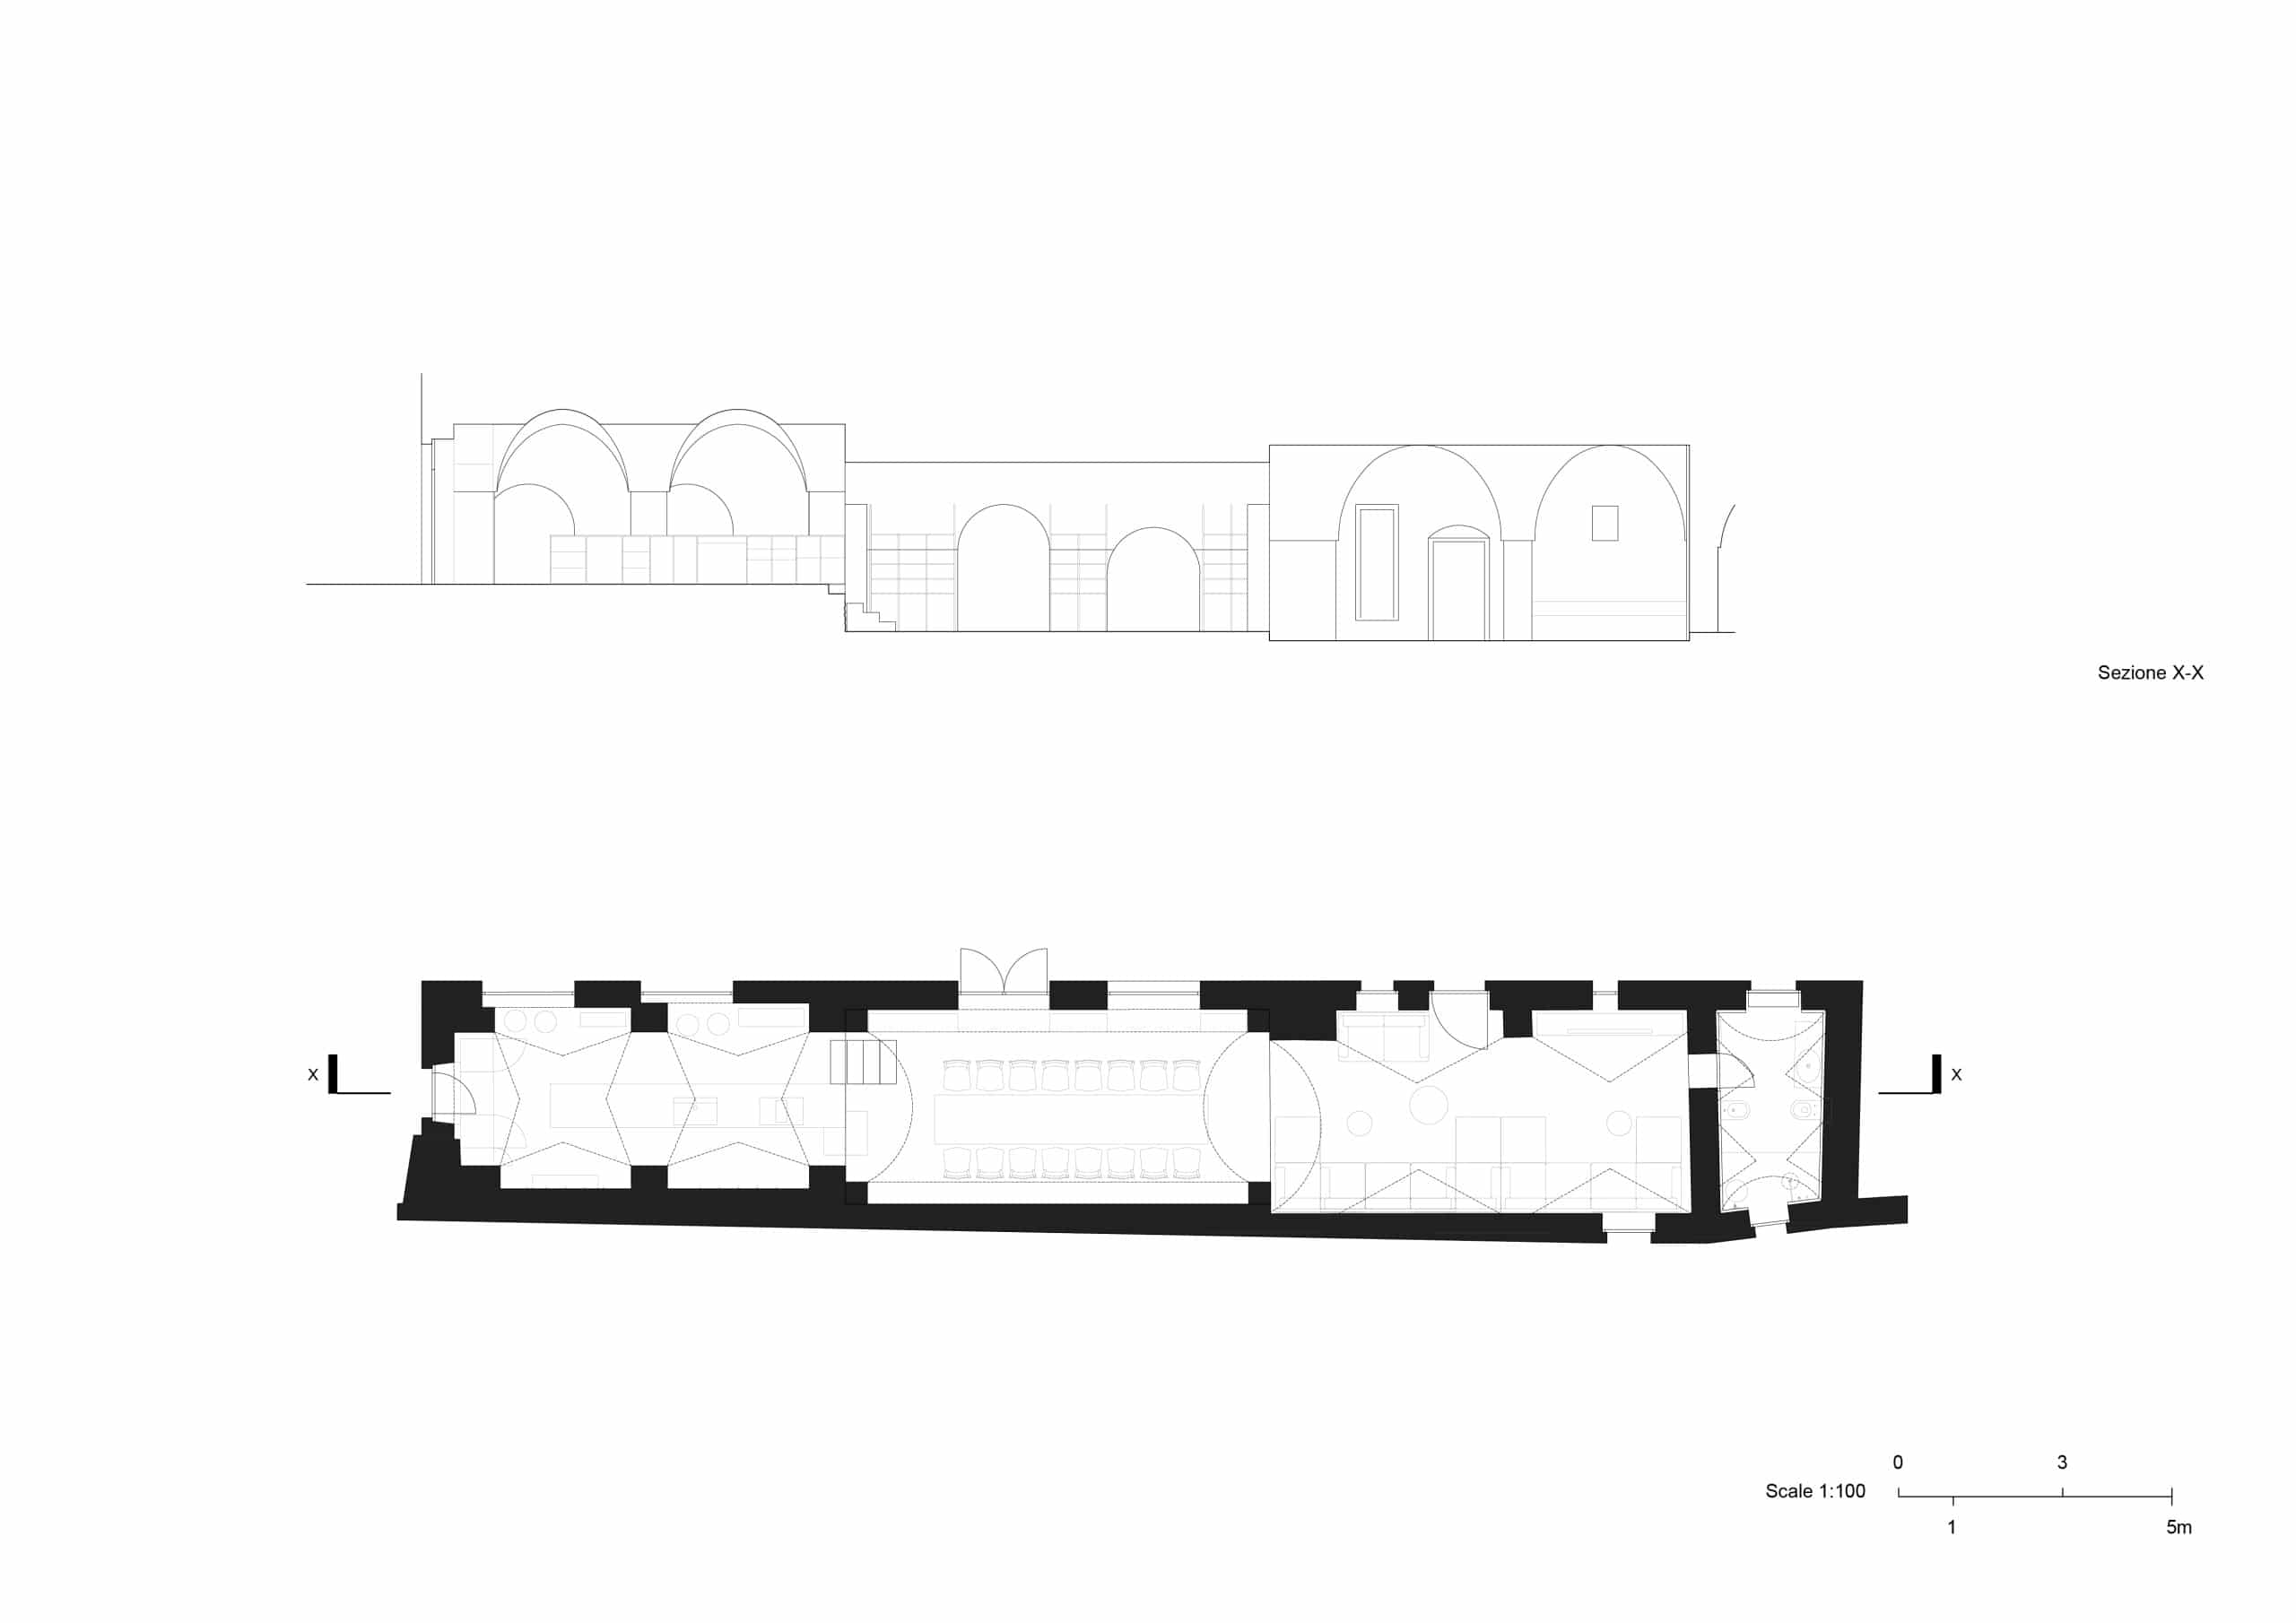 Schnitt und Grundriss, Masseria Belvedere, Carovigno, Zeichnung: Valari